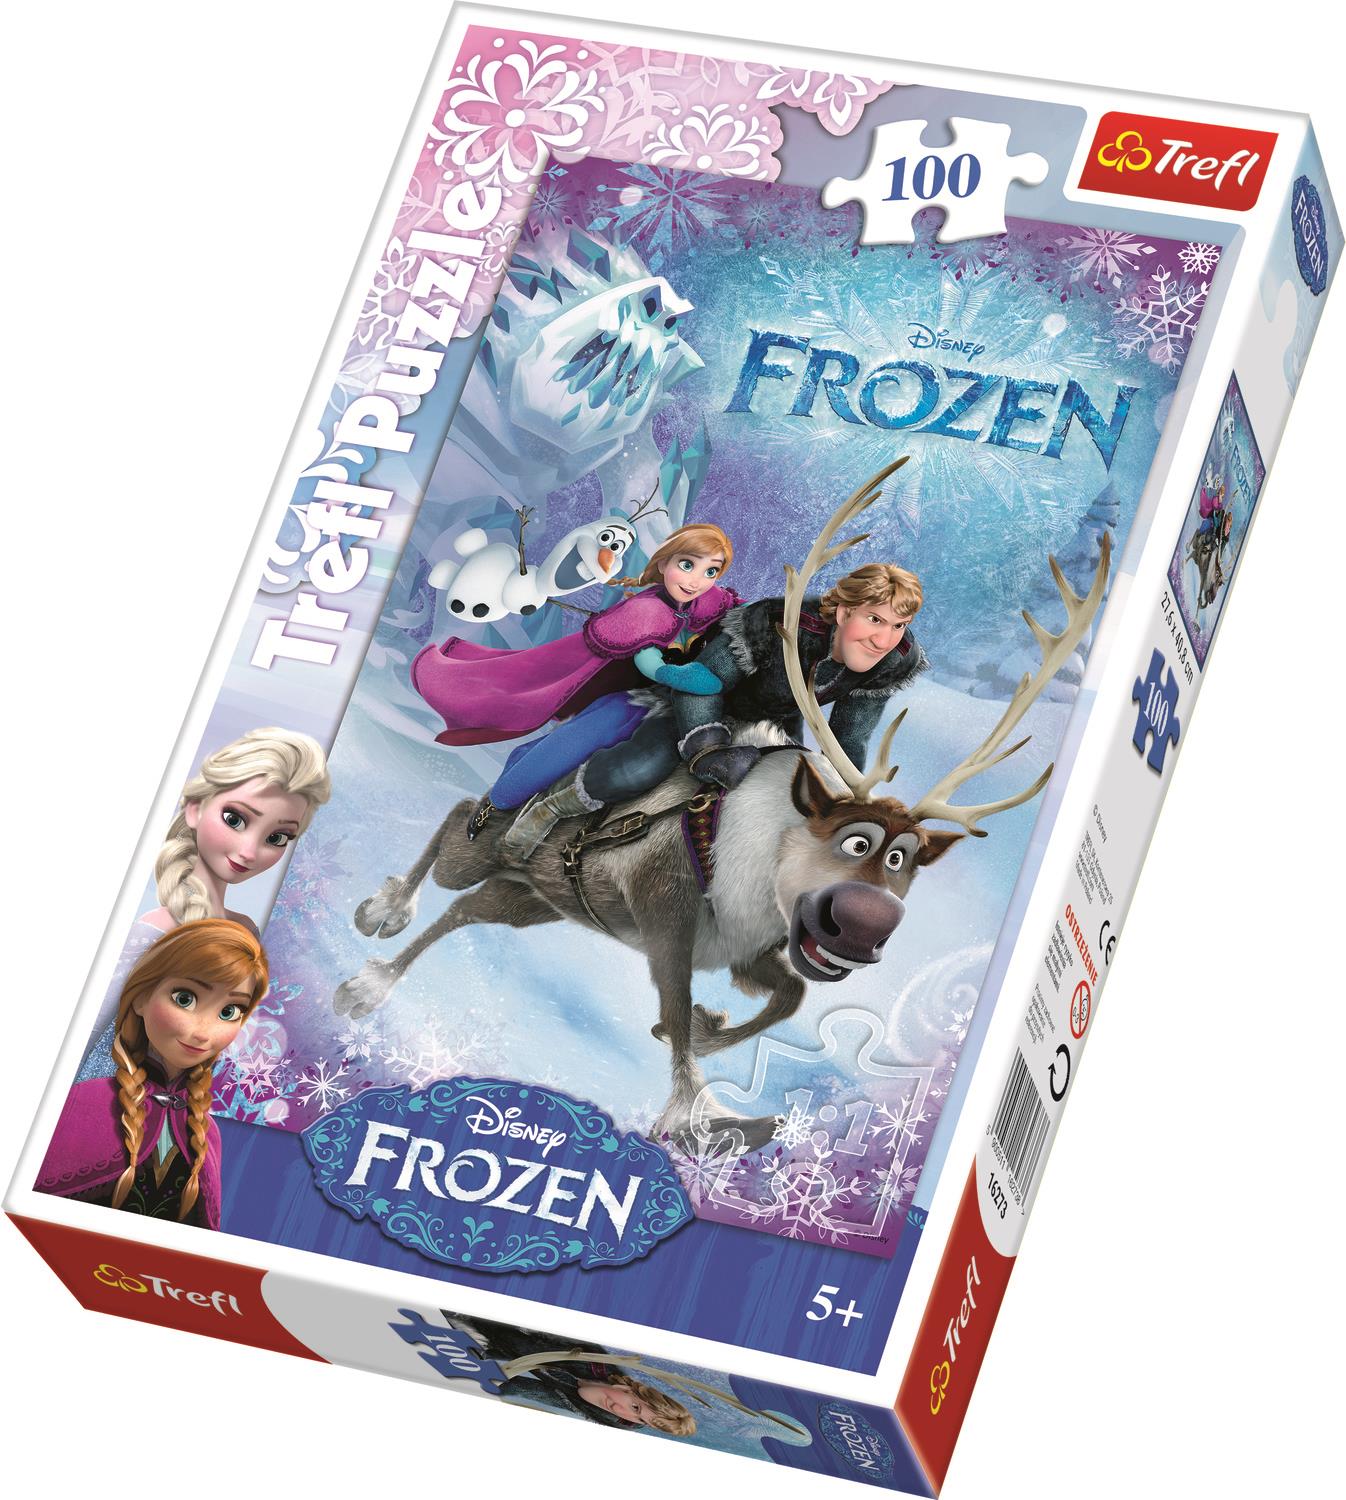 Trefl Çocuk Puzzle 16273 Frozen Anne's Rescue, Disney 100 Parça Puzzle